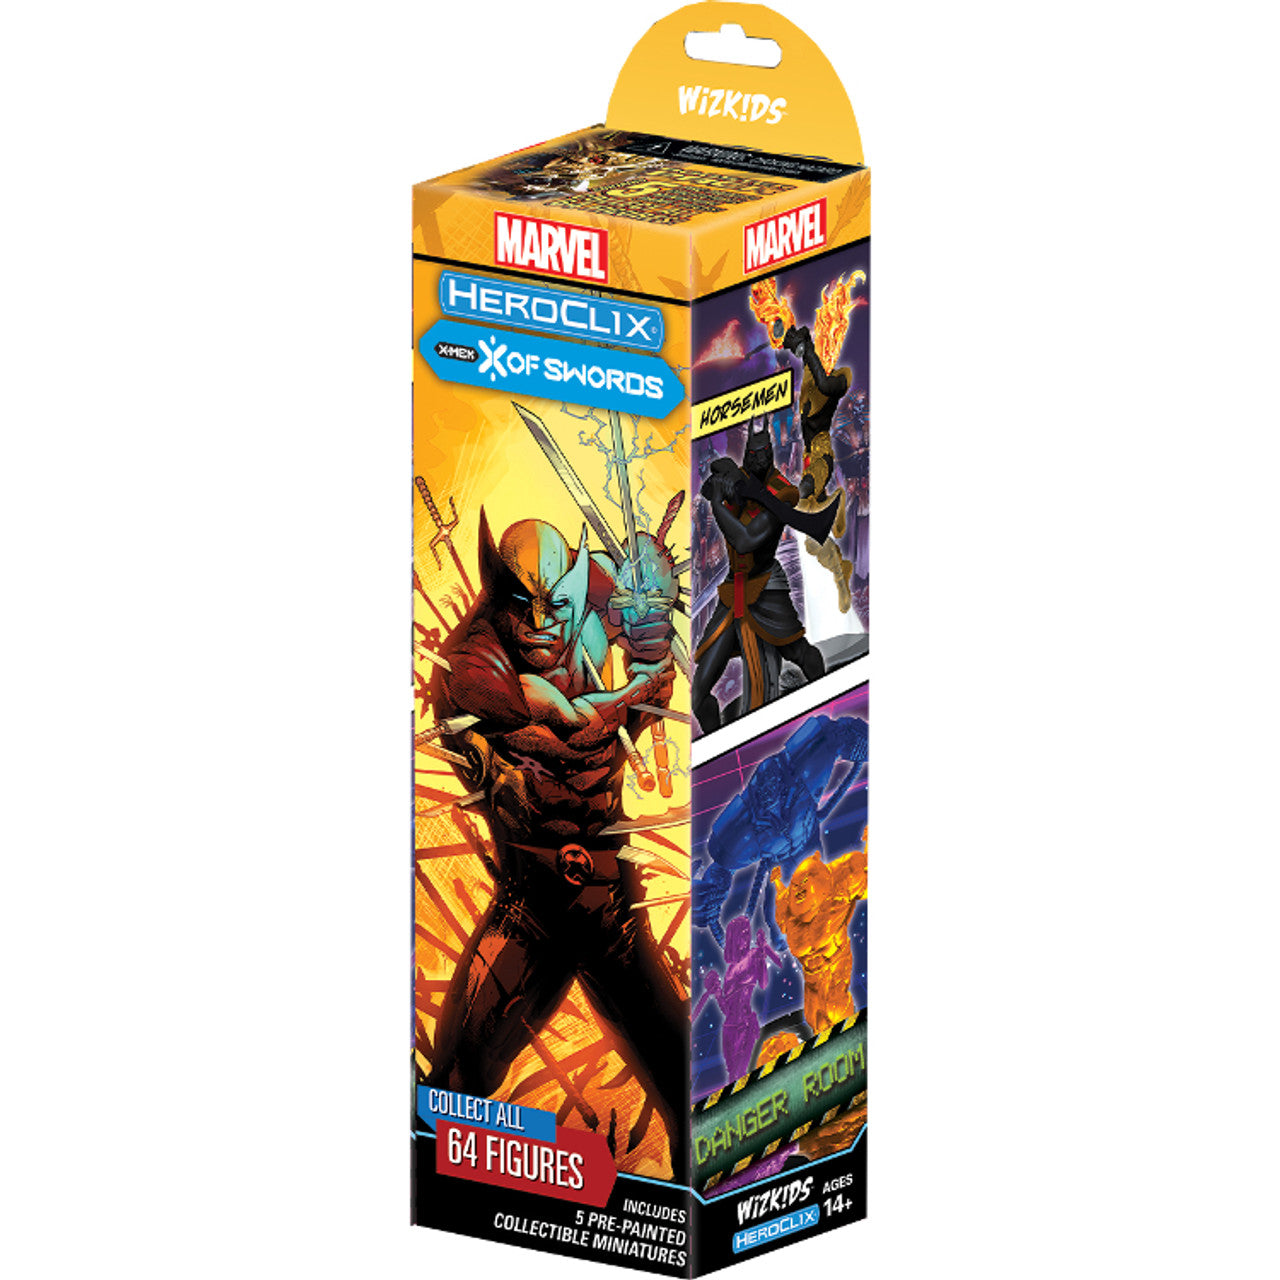 Marvel Heroclix X-Men X of Swords Booster Pack